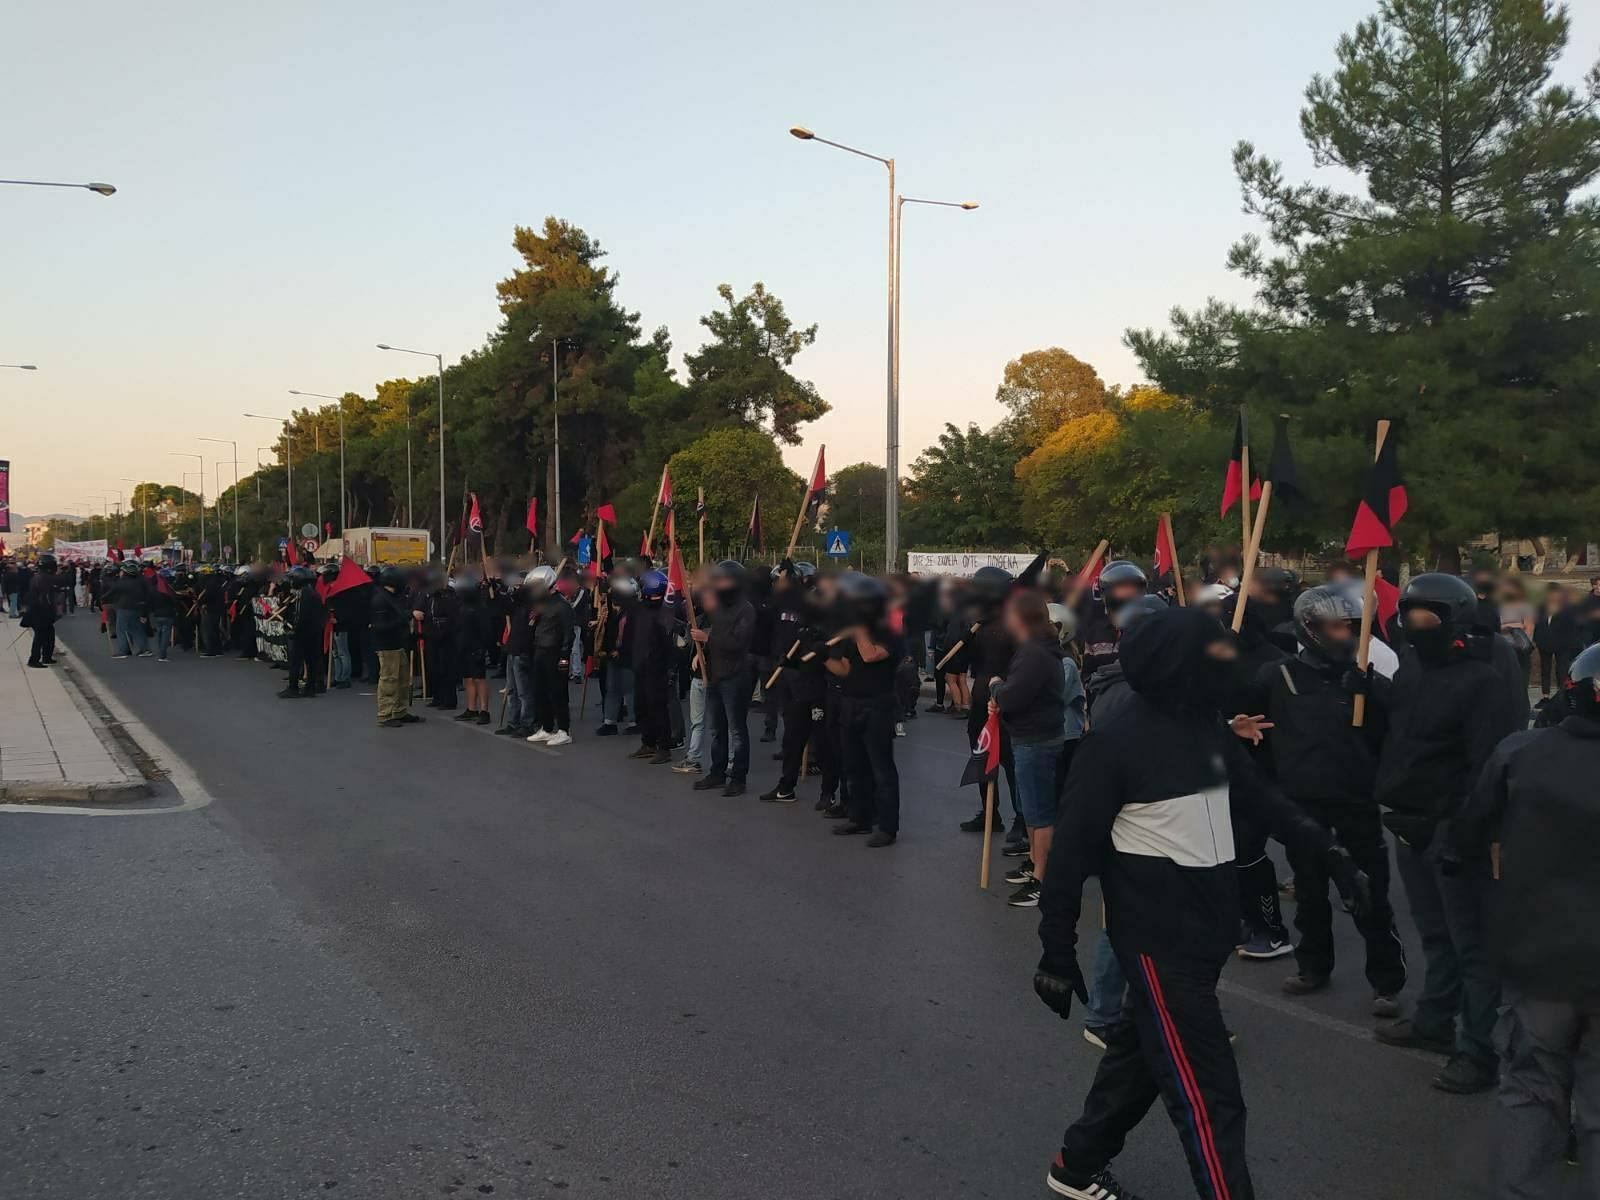 Θεσσαλονίκη | Ενημέρωση από τη χθεσινή αντιφασιστική πορεία και την αστυνομική καταστολή που υπέστη (vid & photos). Η χθεσινή μαζική [...]